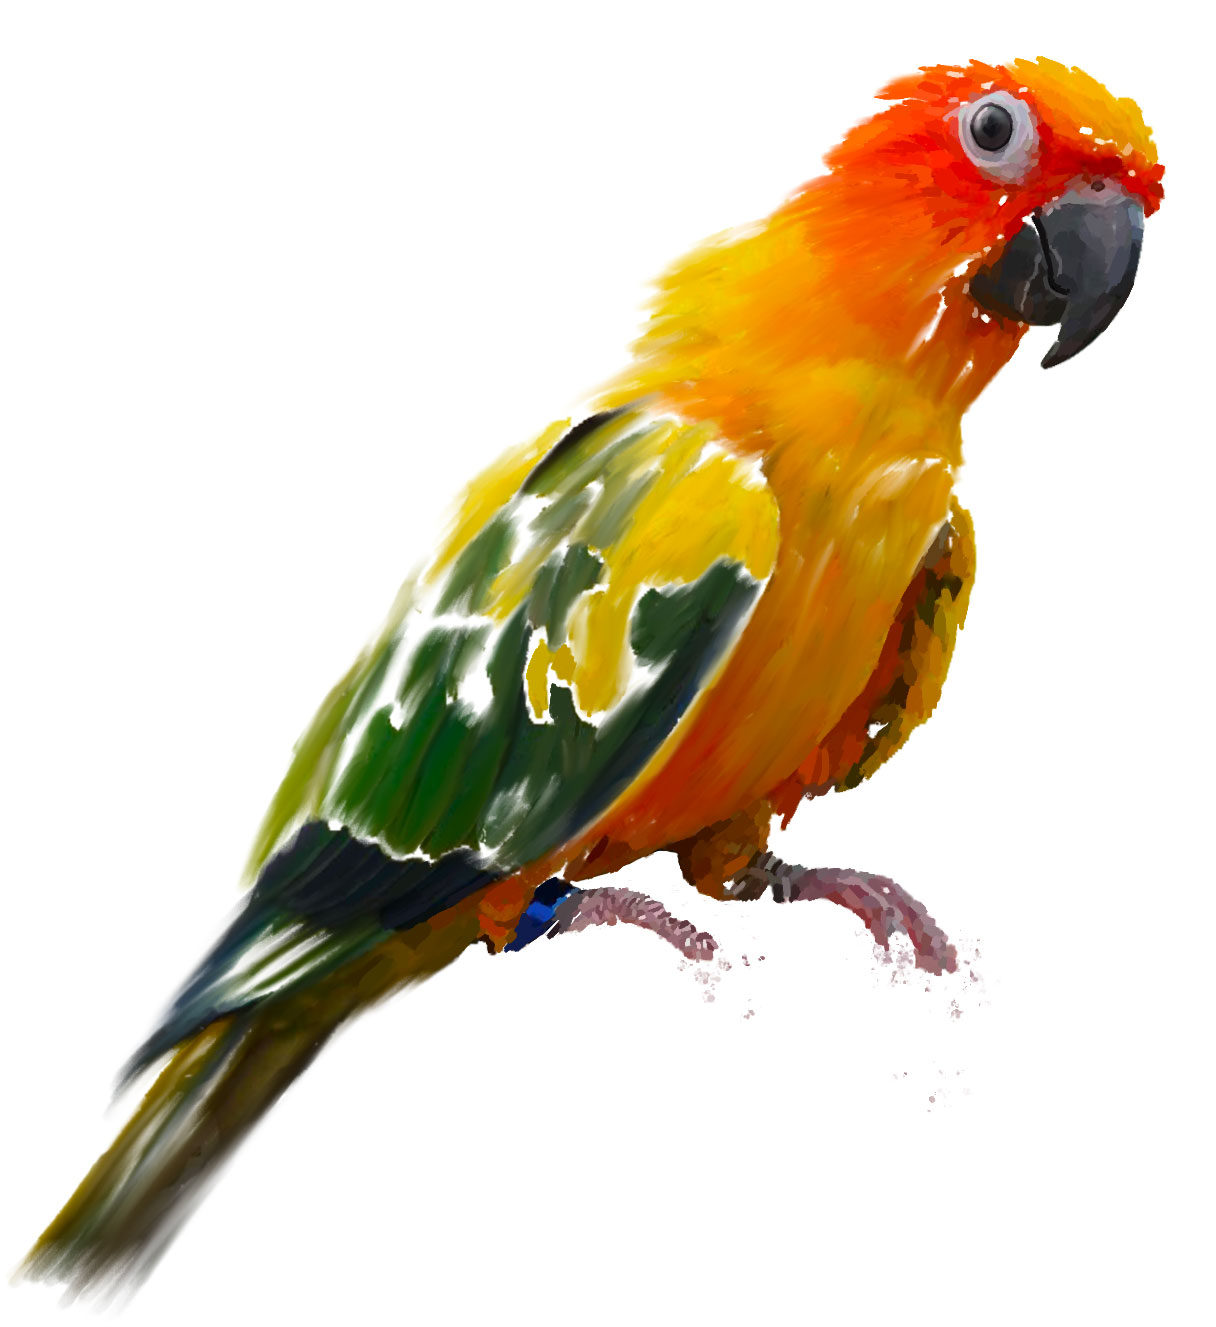 Painting of a Sun Parakeet bird